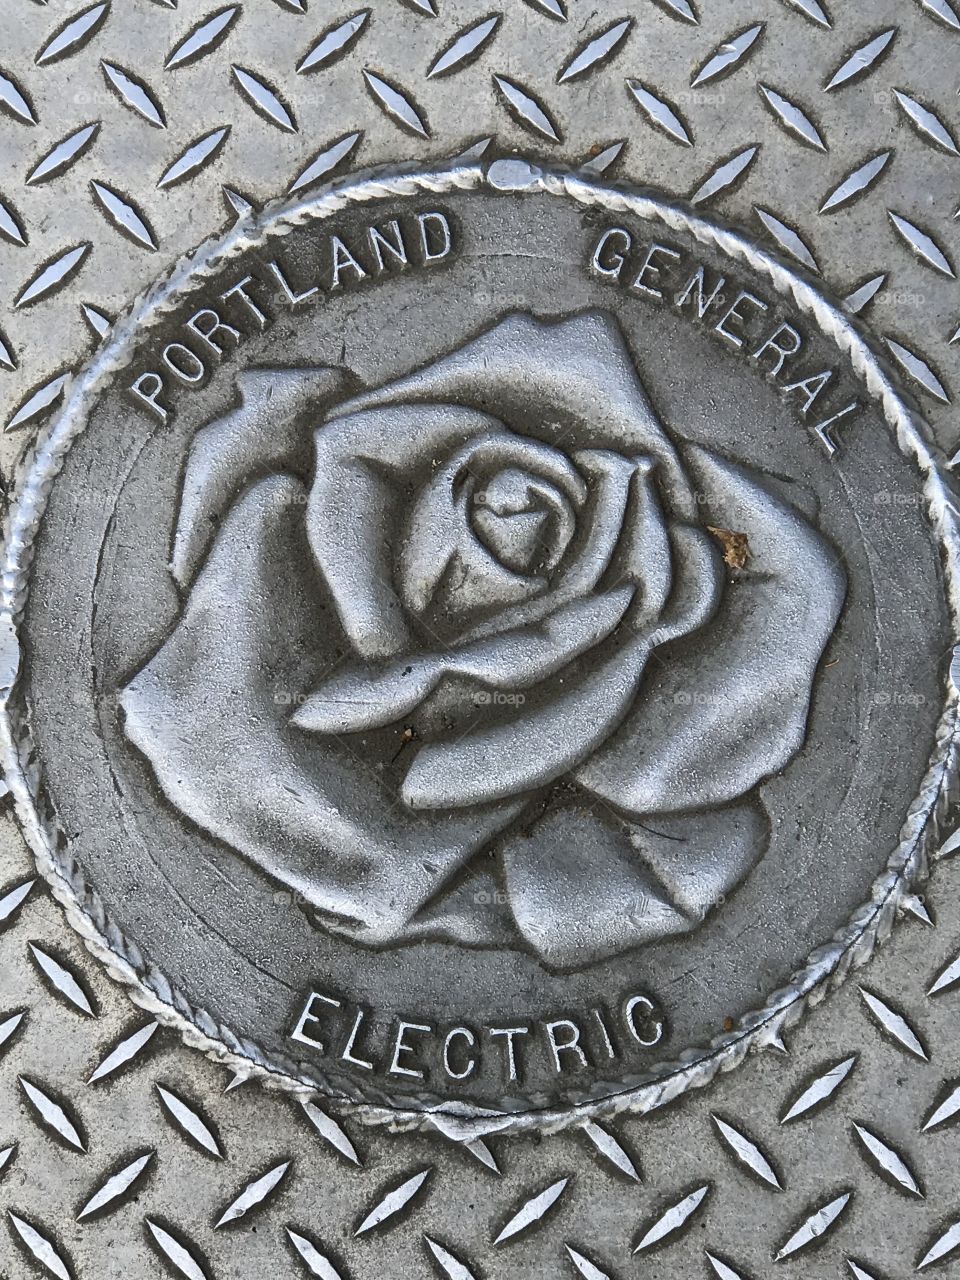 Portland manhole cover